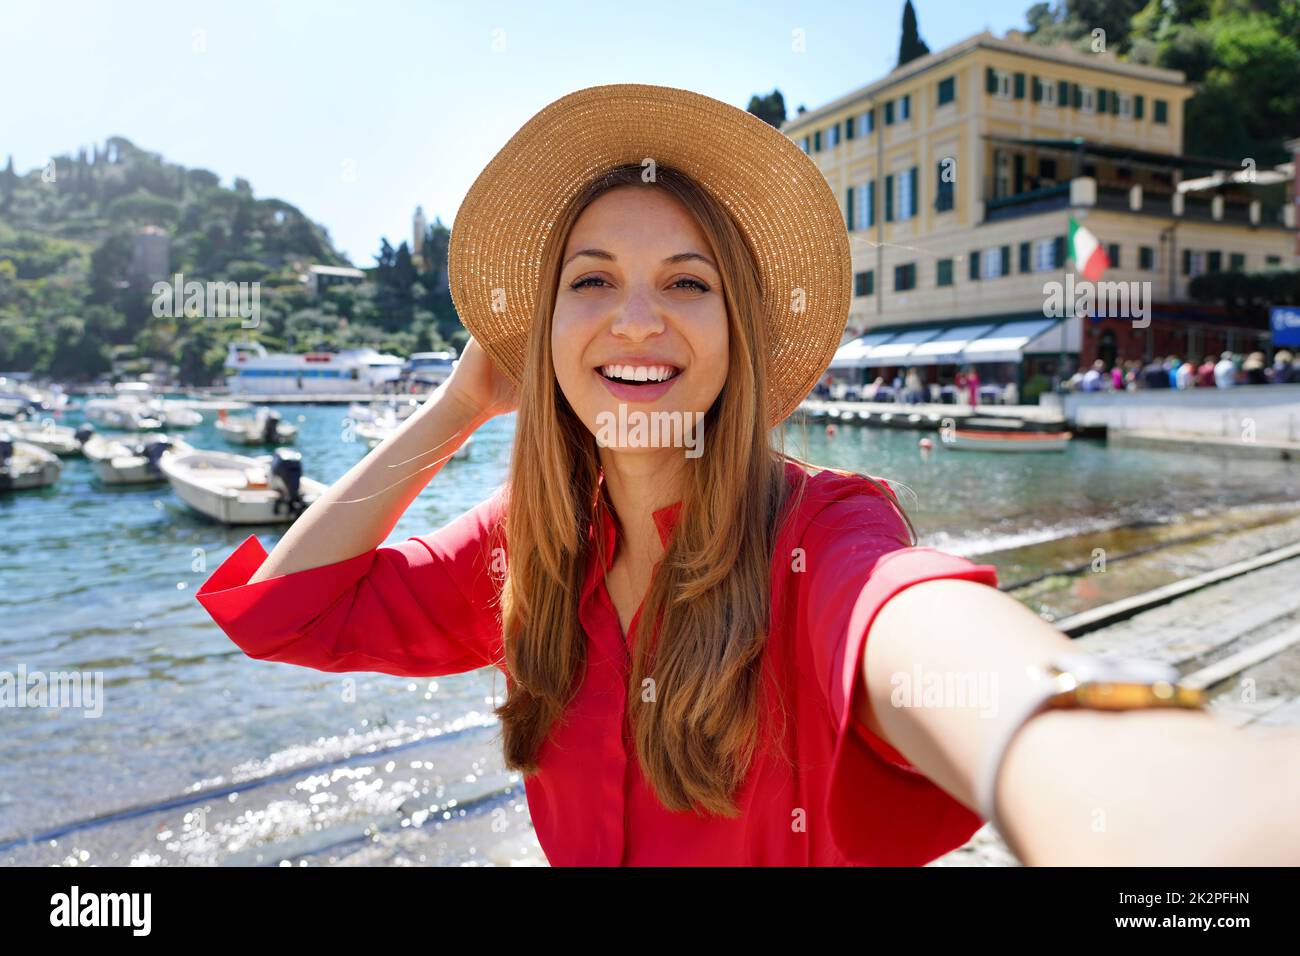 Portofino chica turística tomando foto selfie en famoso destino de lujo. Atracción turística europea en Italia. Mujer joven de vacaciones. Foto de stock